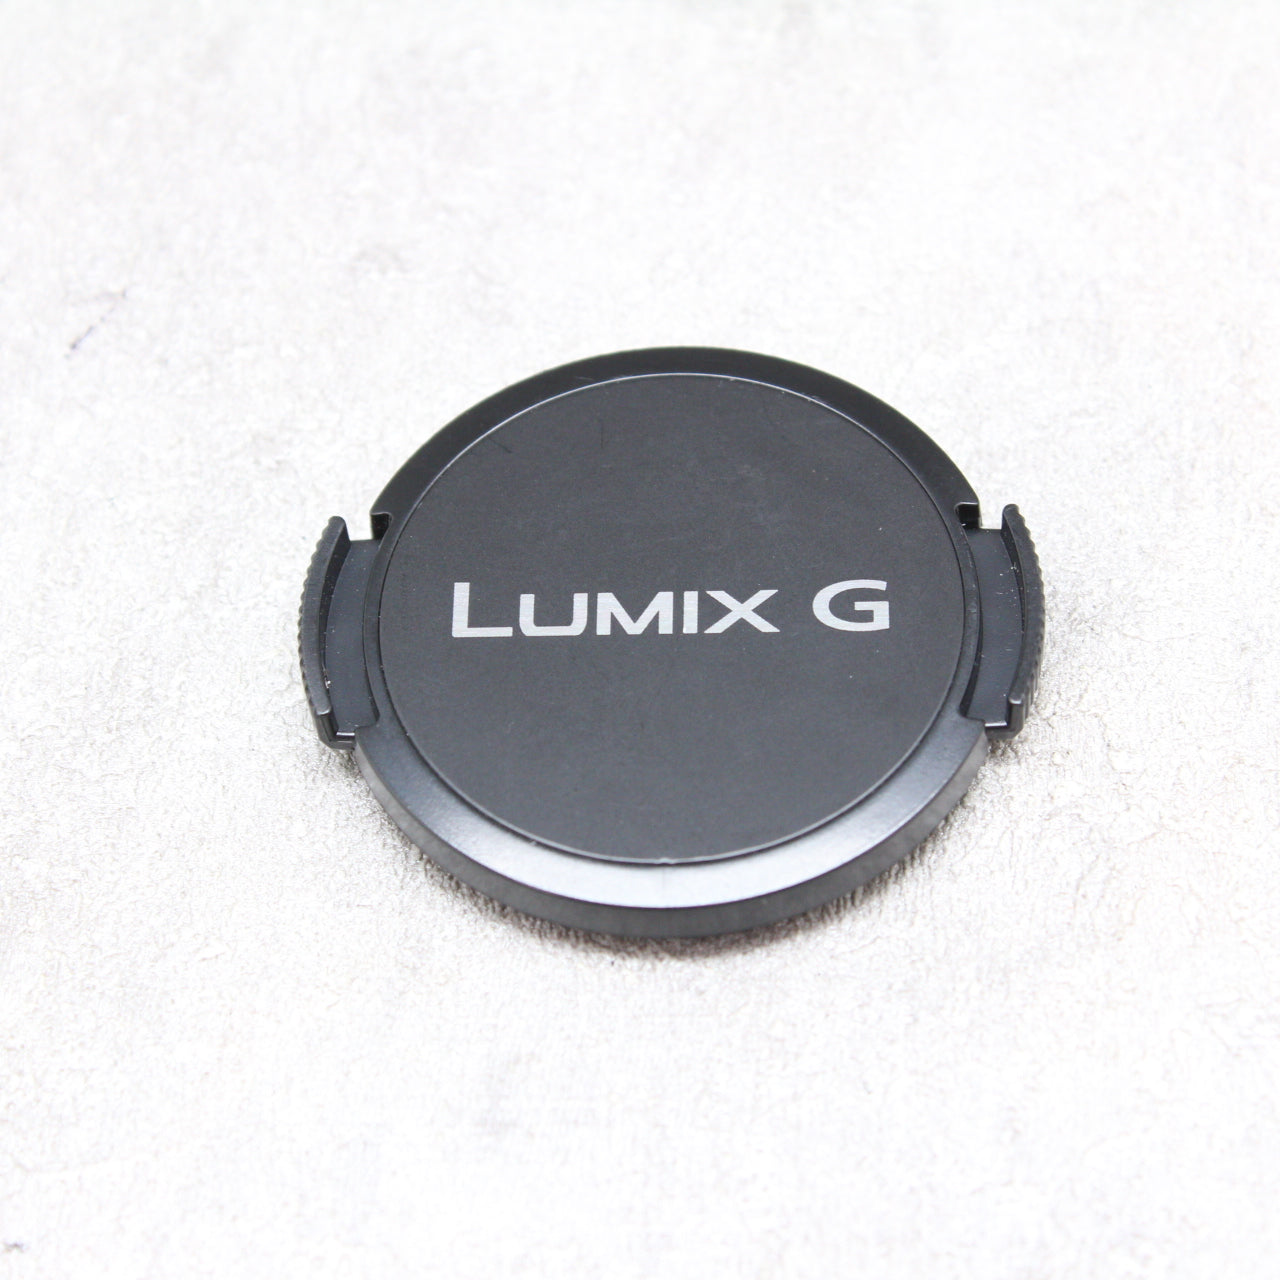 LUMIX GM5 レンズキット - ミラーレス一眼